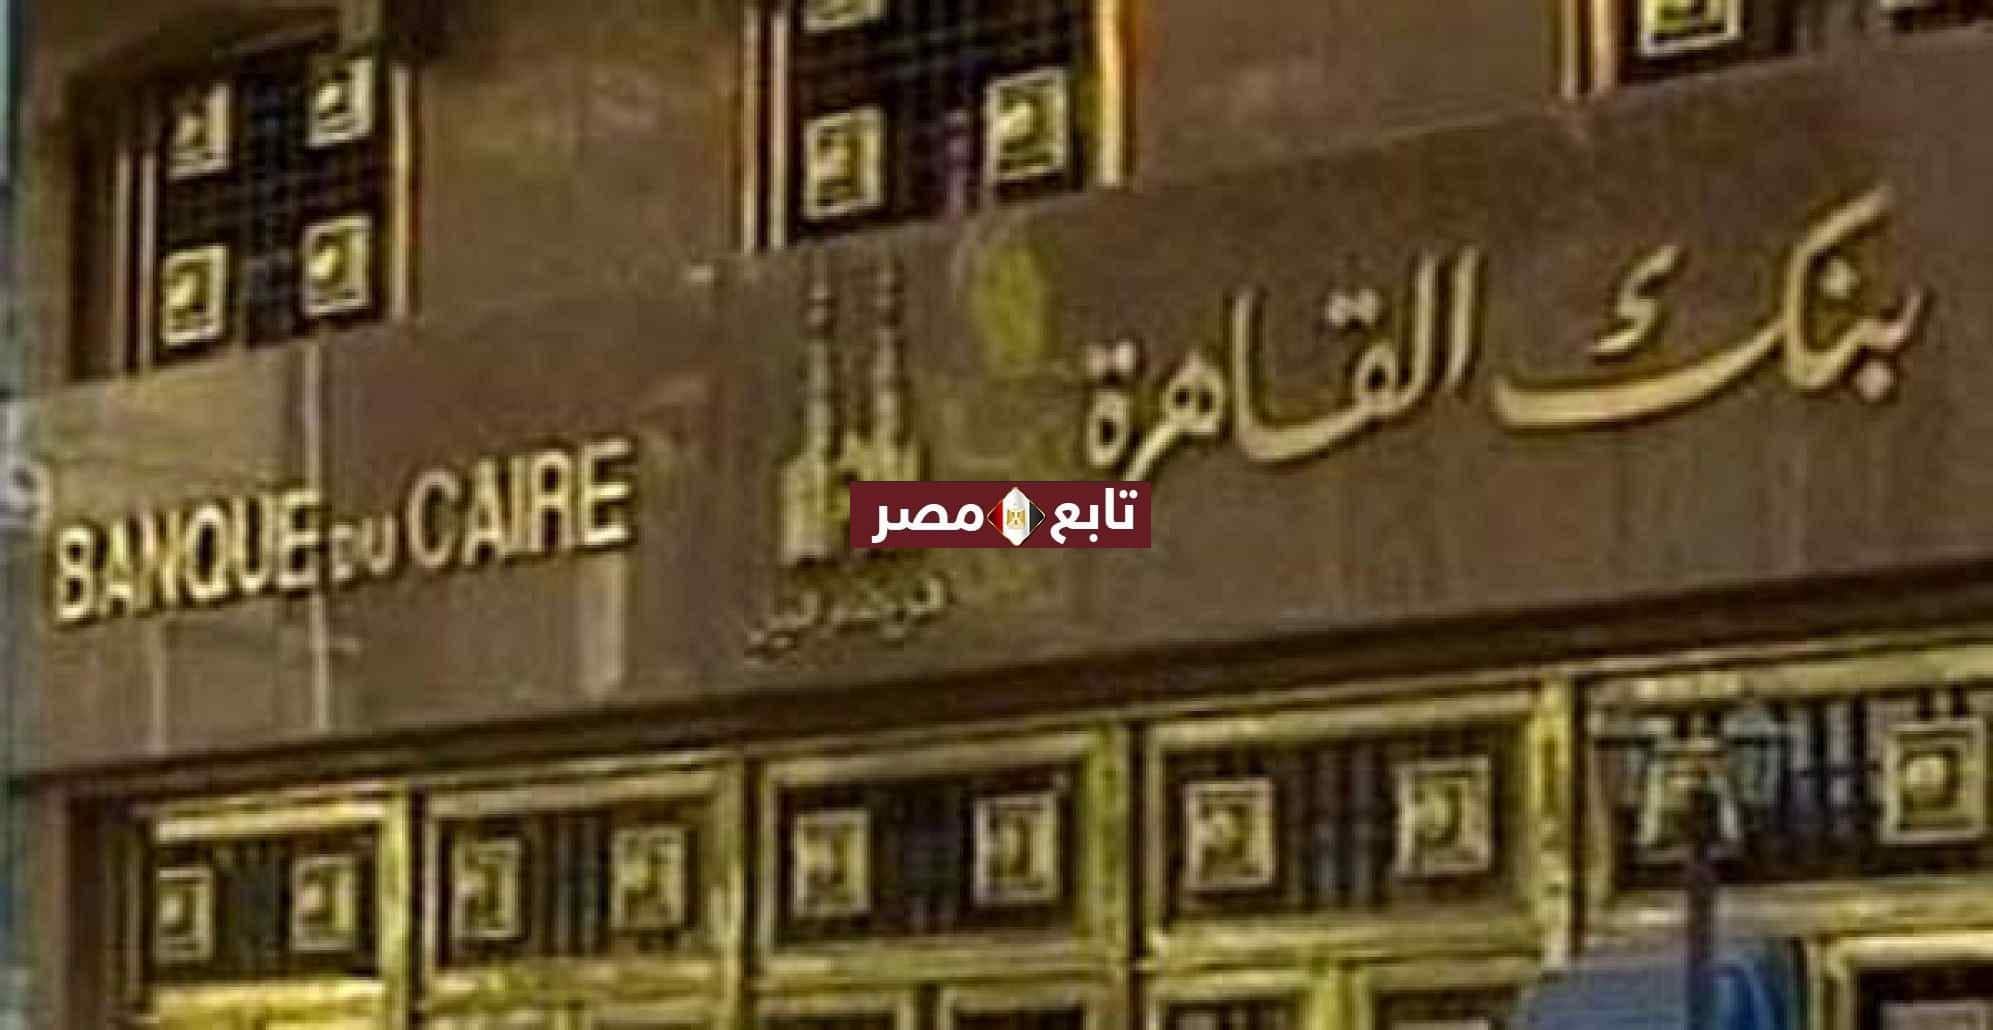 عناوين فروع بنك القاهرة المنتشرة بمحافظة القاهرة